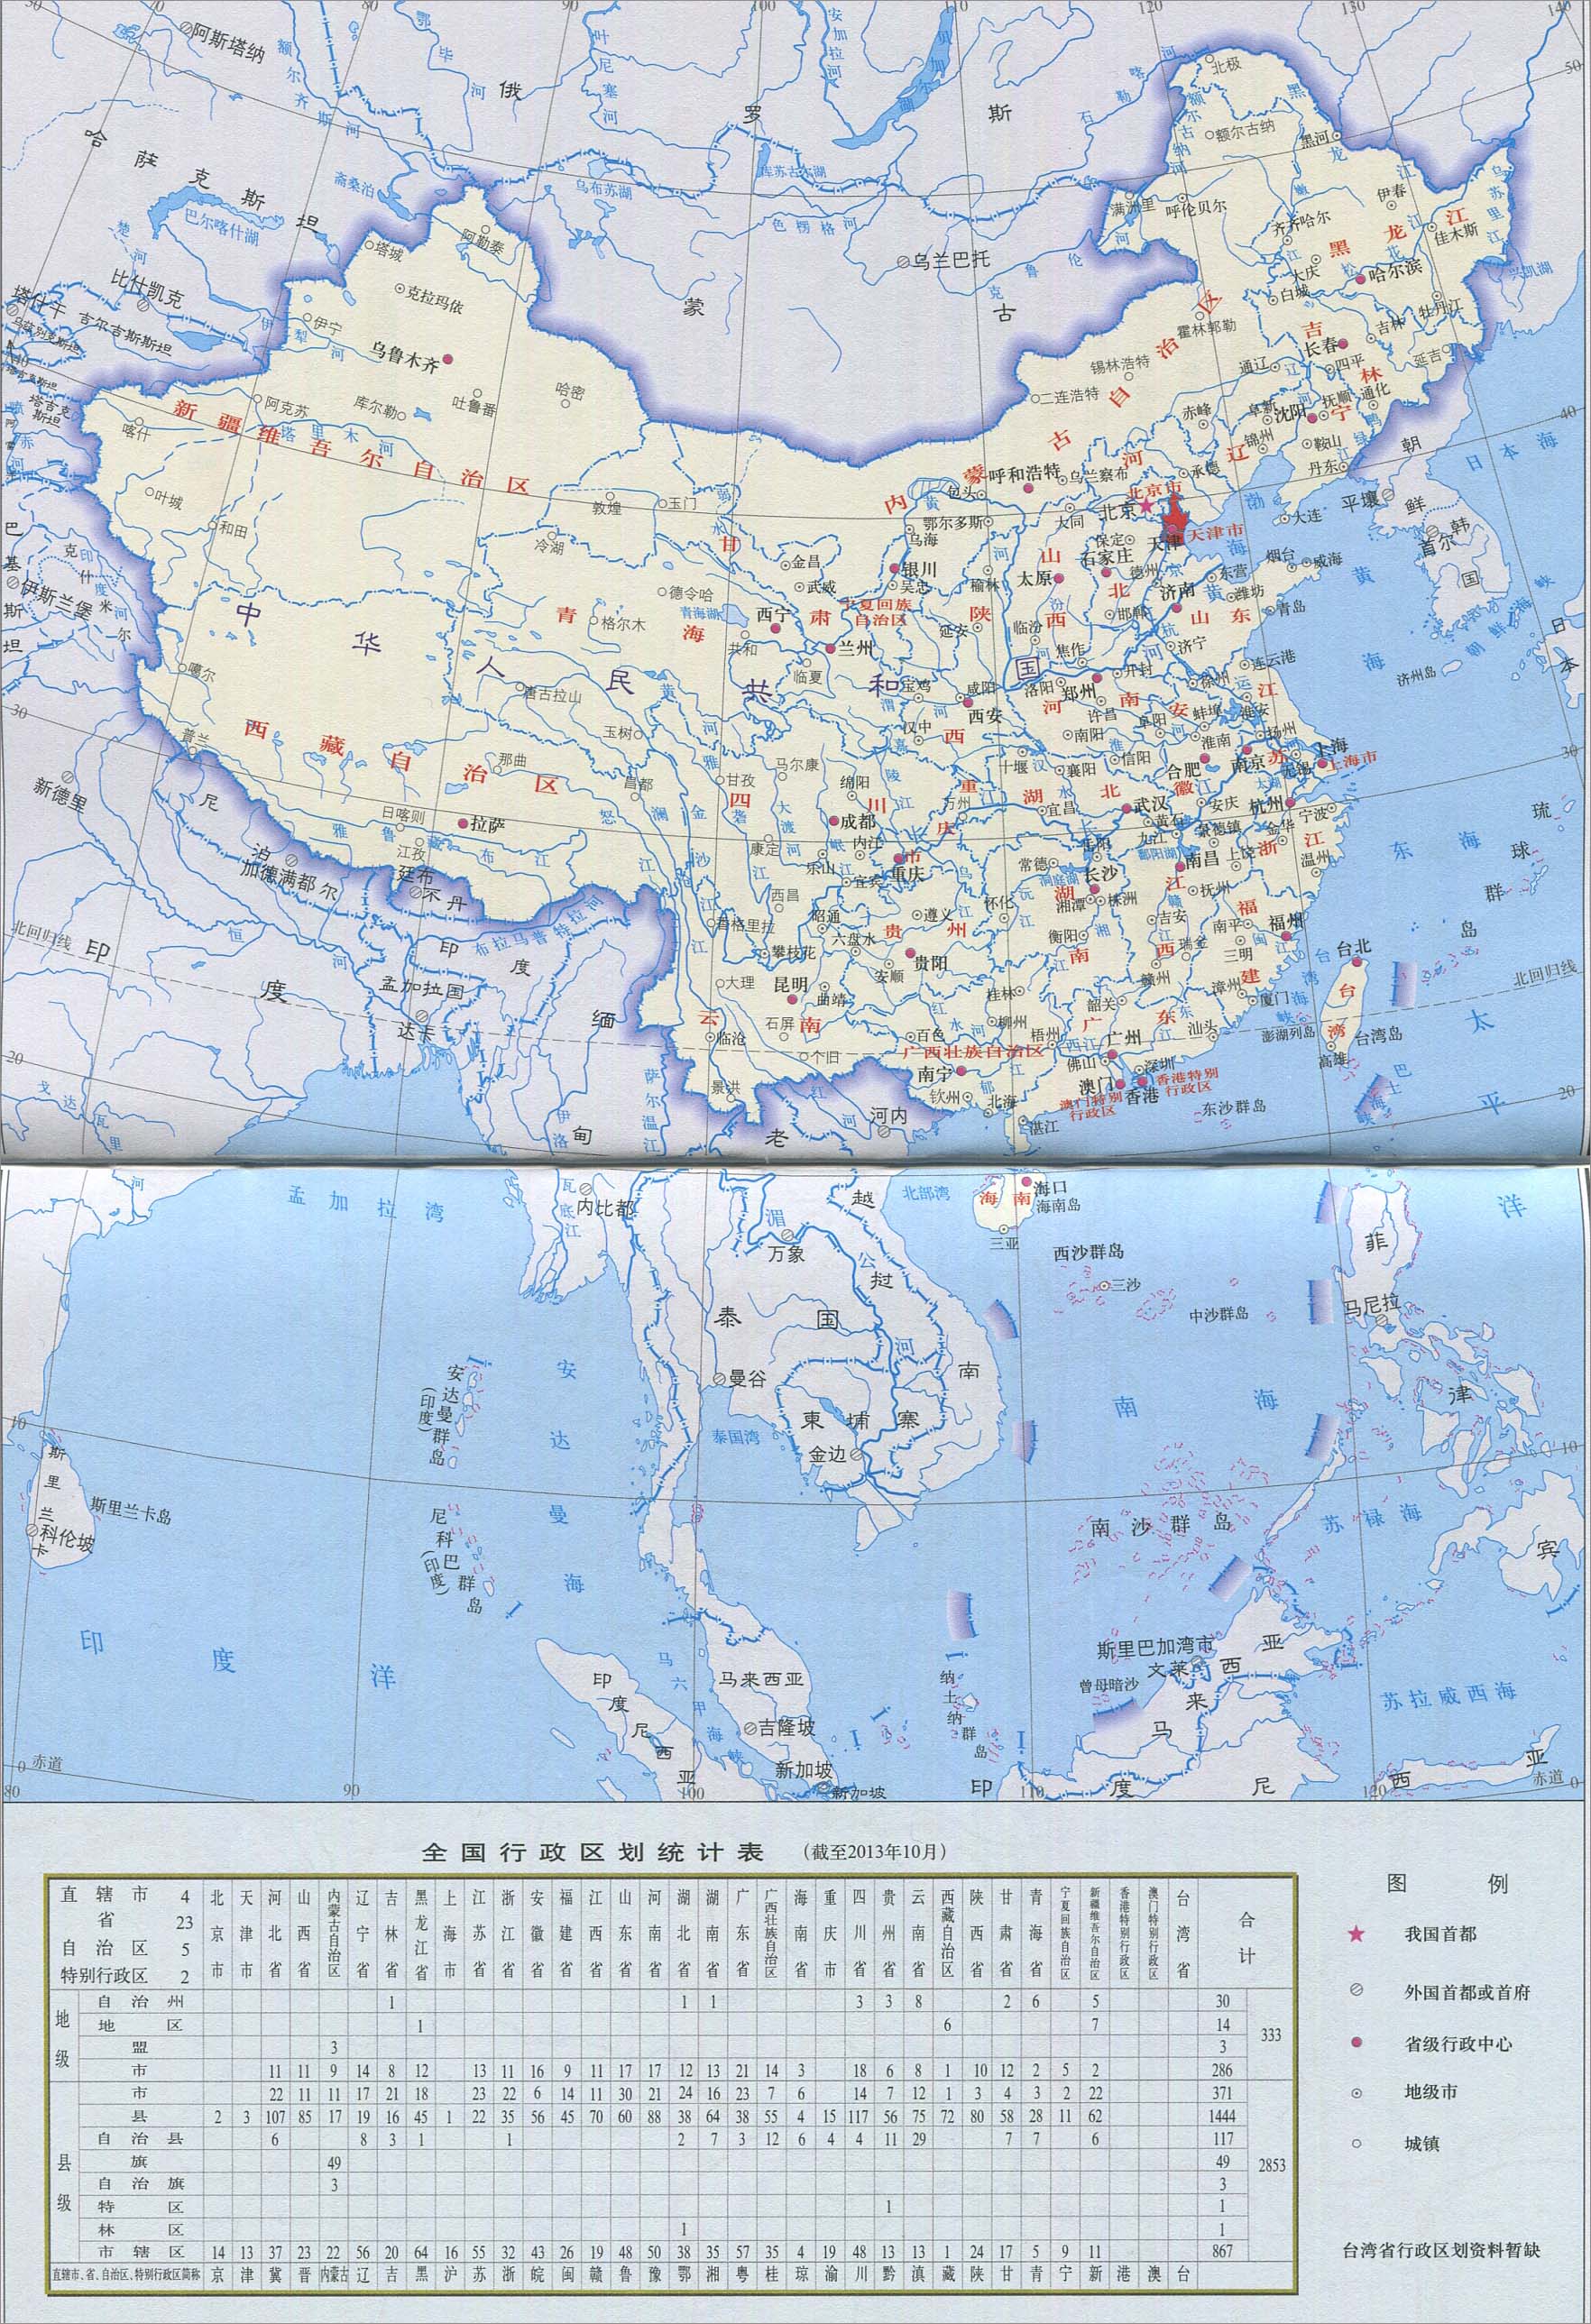 天津市在中国的地理位置